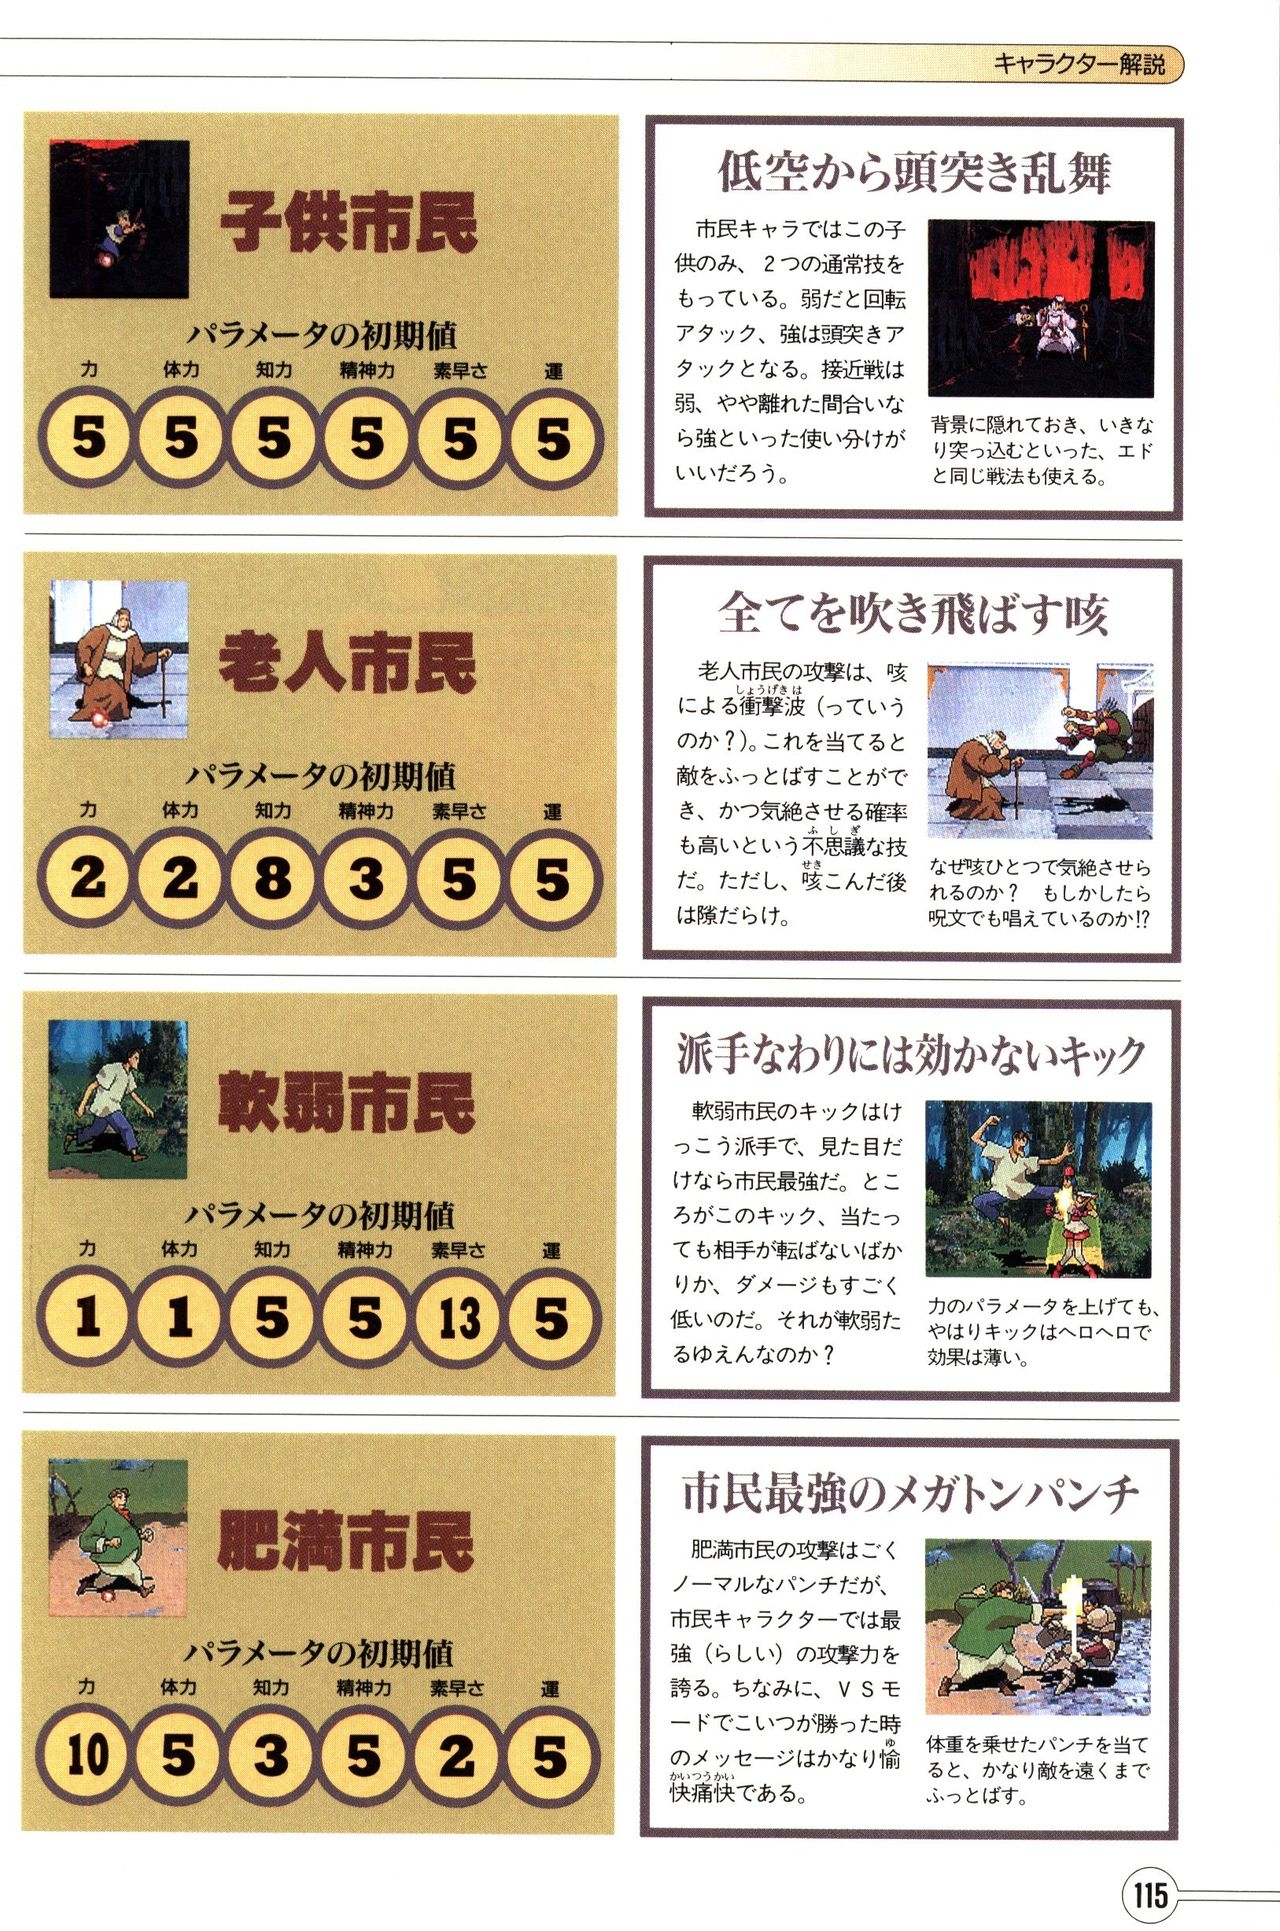 Guardian Heroes Perfect Guide (Sega Saturn magazine books) 117